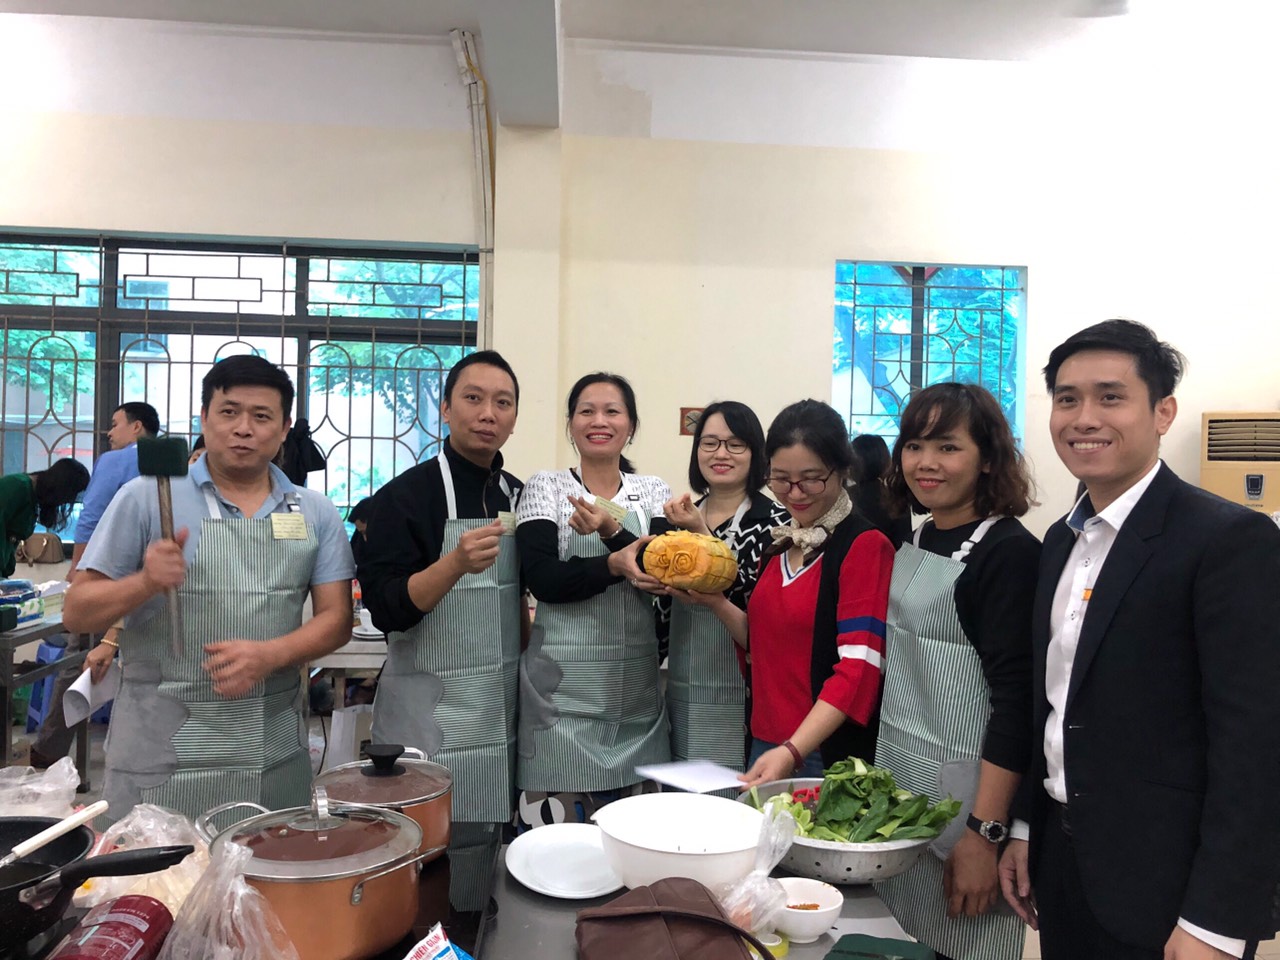 Đội tuyển liên quân Khoa công nghệ ô tô – Cơ khí đạt giải khuyến khích tại Hội thi nấu ăn và cắm hoa chào mừng Ngày thành lập Hội Liên hiệp Phụ nữ Việt Nam 20/10